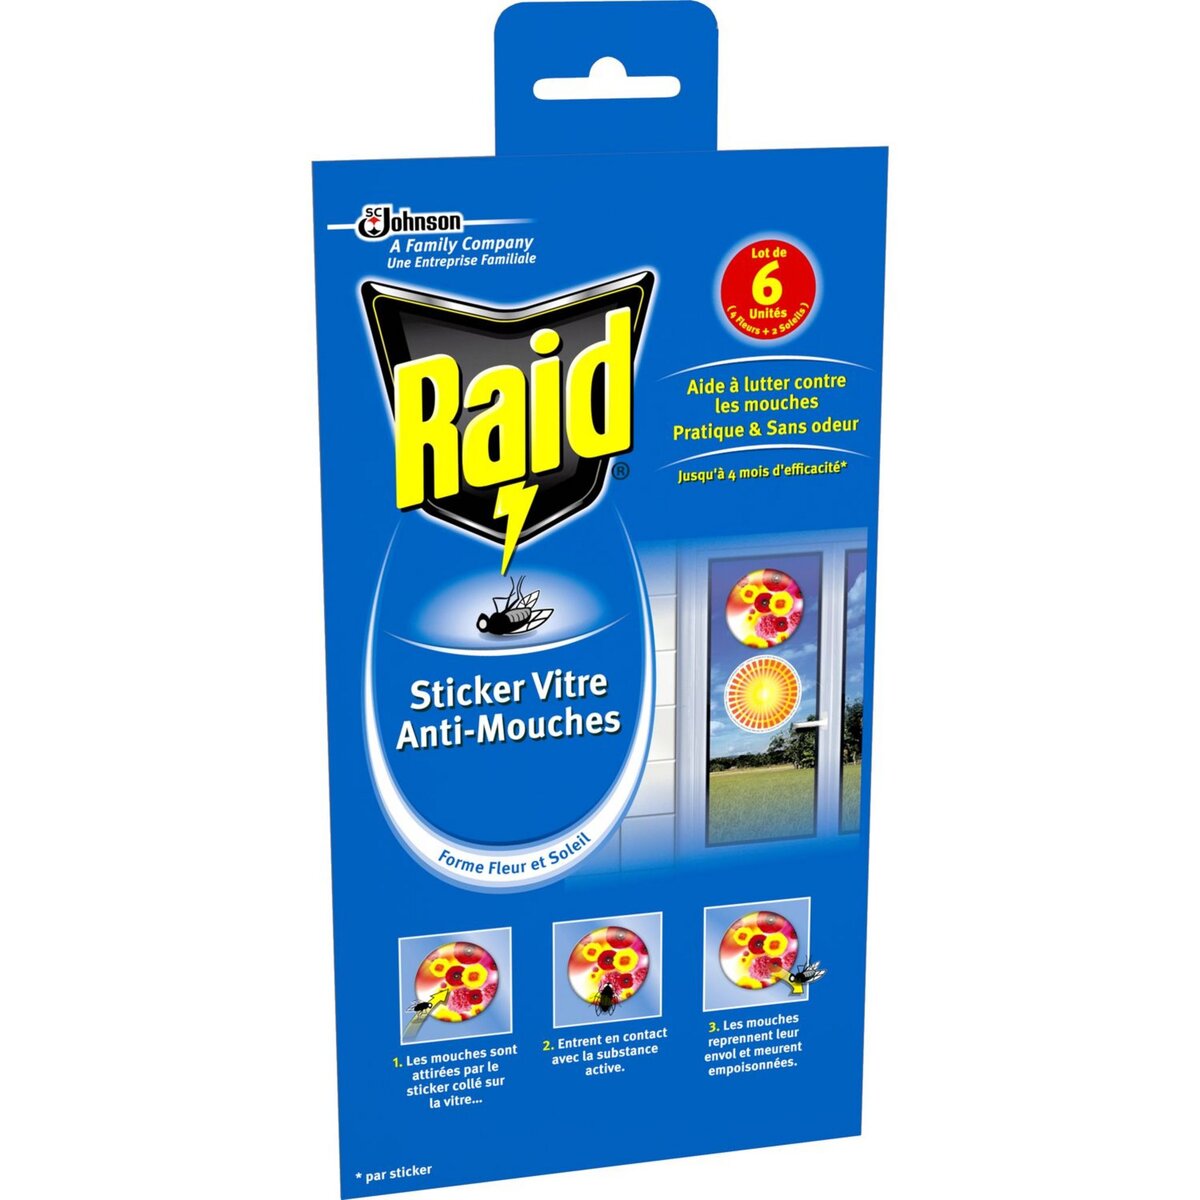 RAID Stickers fleurs vitre anti-mouches efficace 6x4 mois 6 stickers